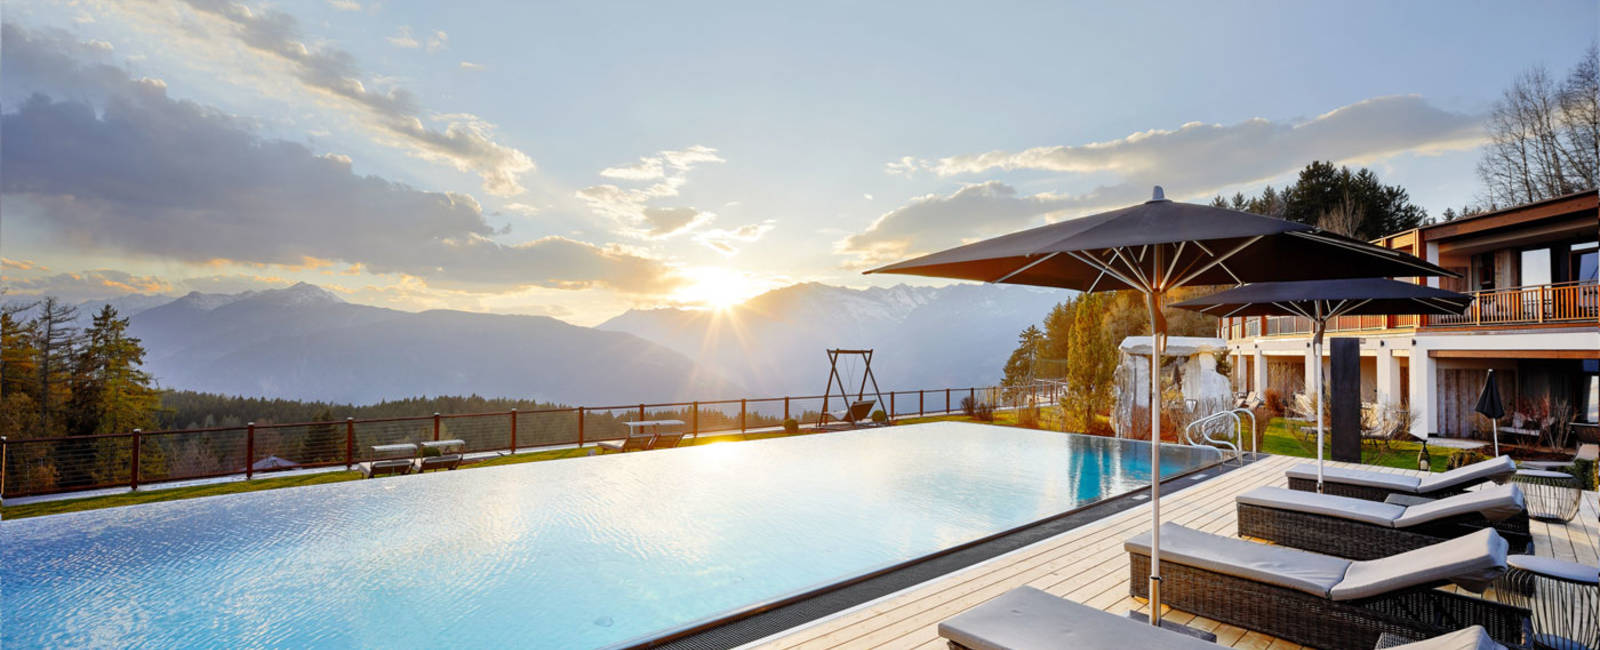  Die Besten Hotels Südtirols 

Die Besten Hotels Südtirols 2022 stehen fest. Wir gratulieren herzlich!
